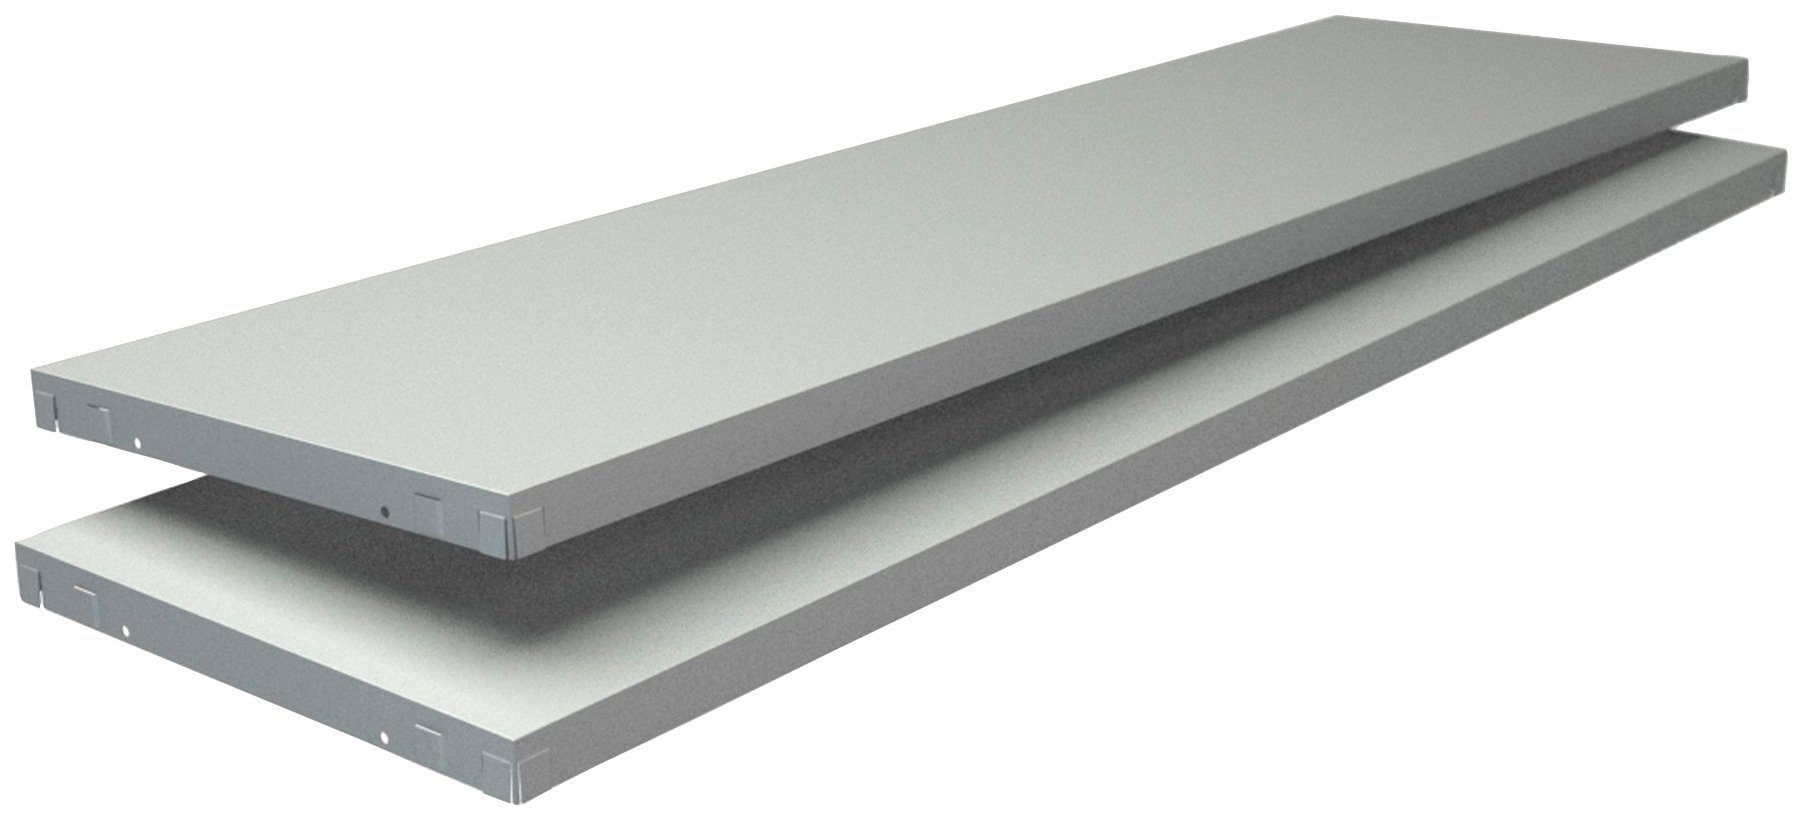 SCHULTE Regalwelt Regalelement Stecksystem-Fachboden PowerMax, weiß, 1200x350 mm 2 Stück